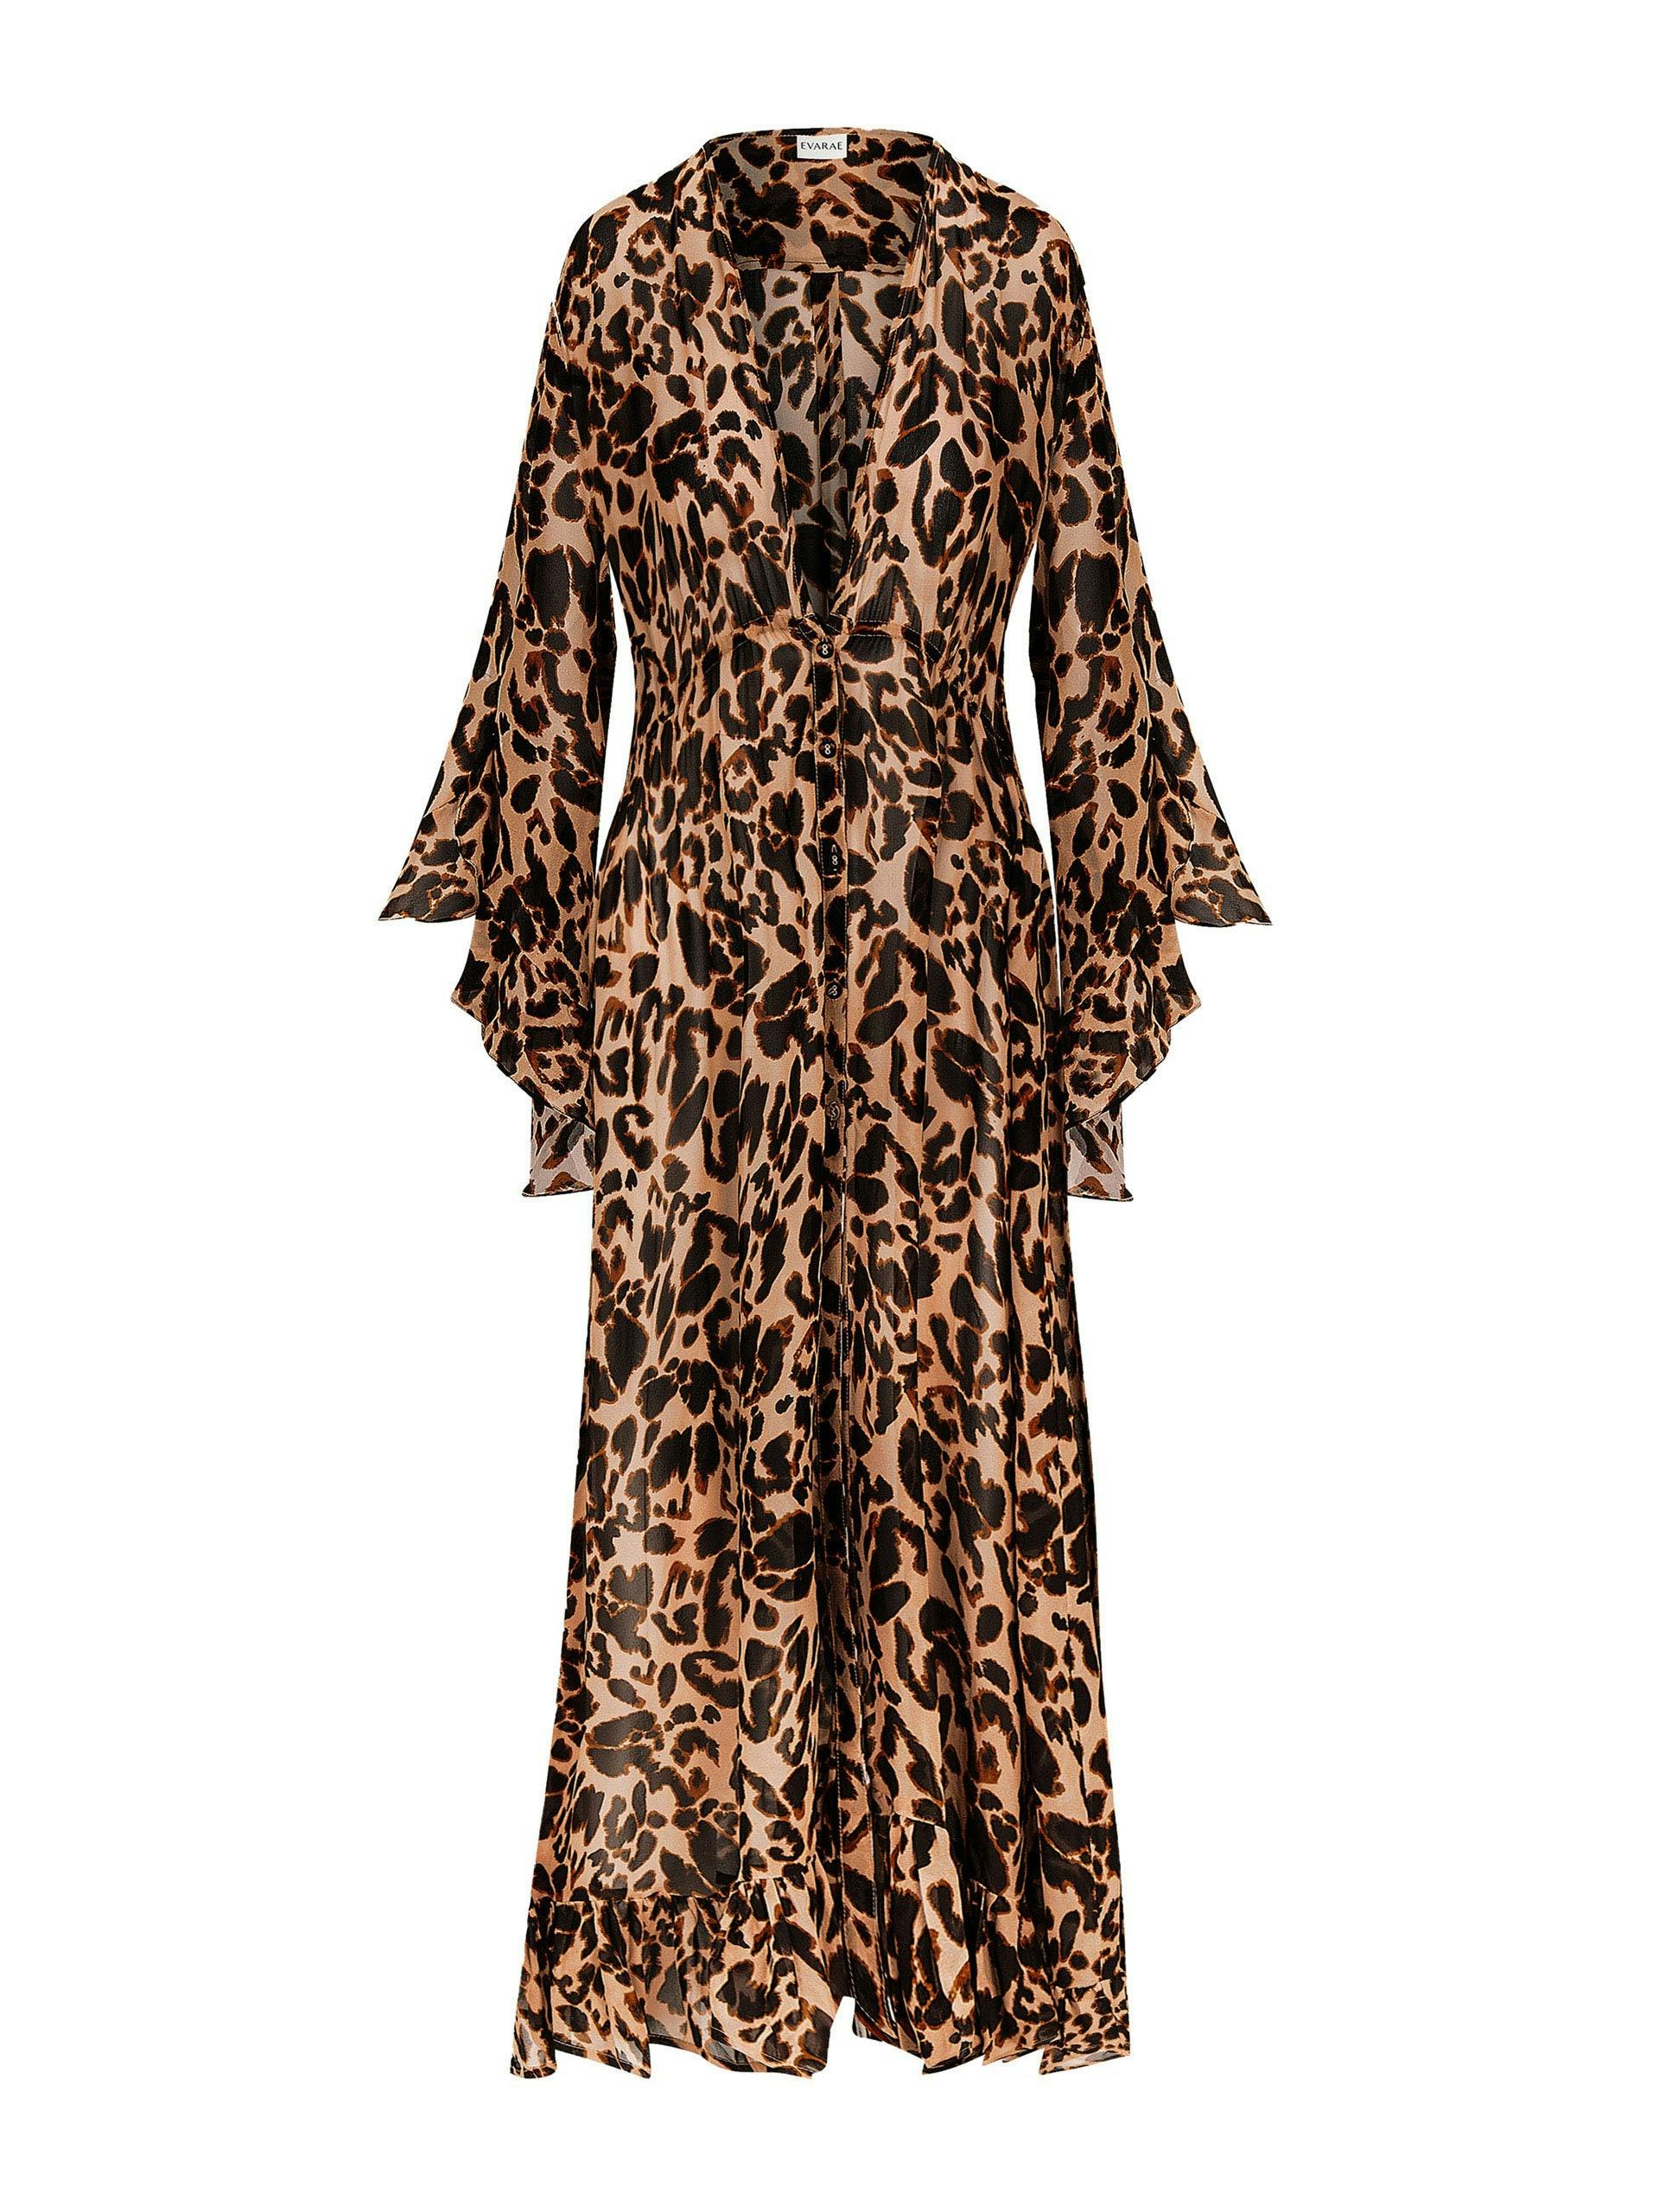 Leopard print Arna kaftan dress